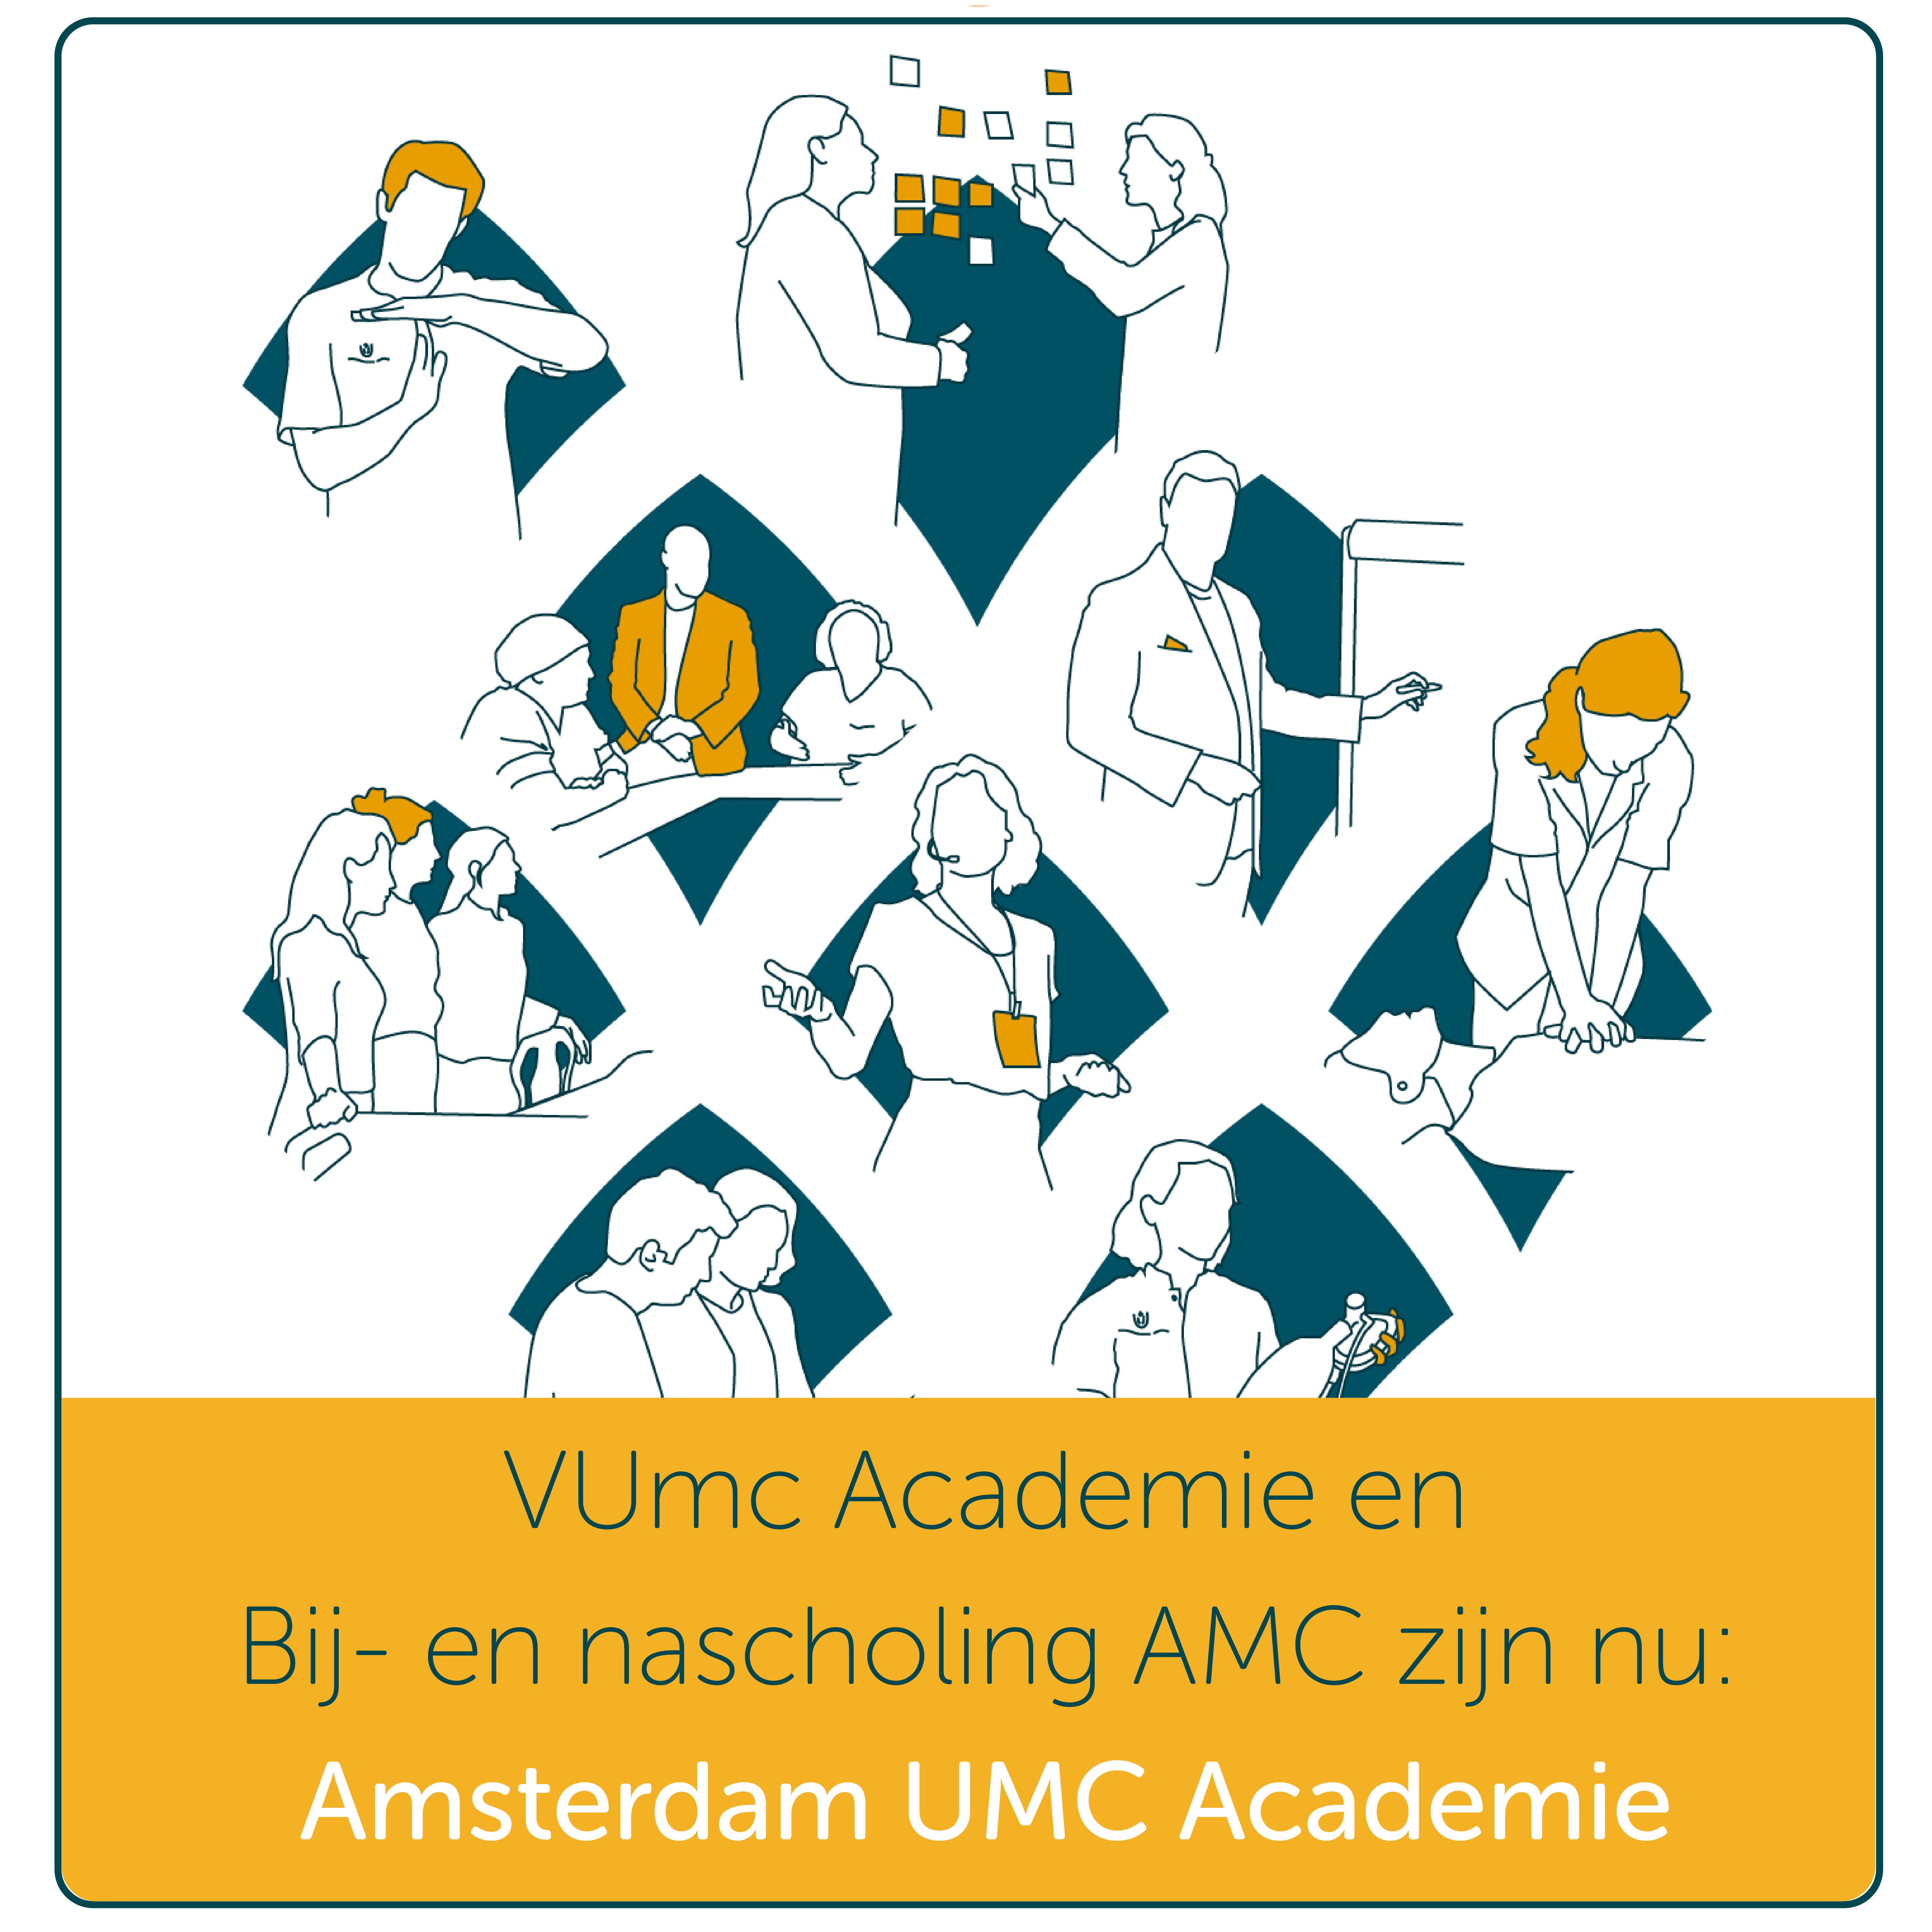 VUmc Academie en Bij- en nascholing AMC samen verder als Amsterdam UMC Academie